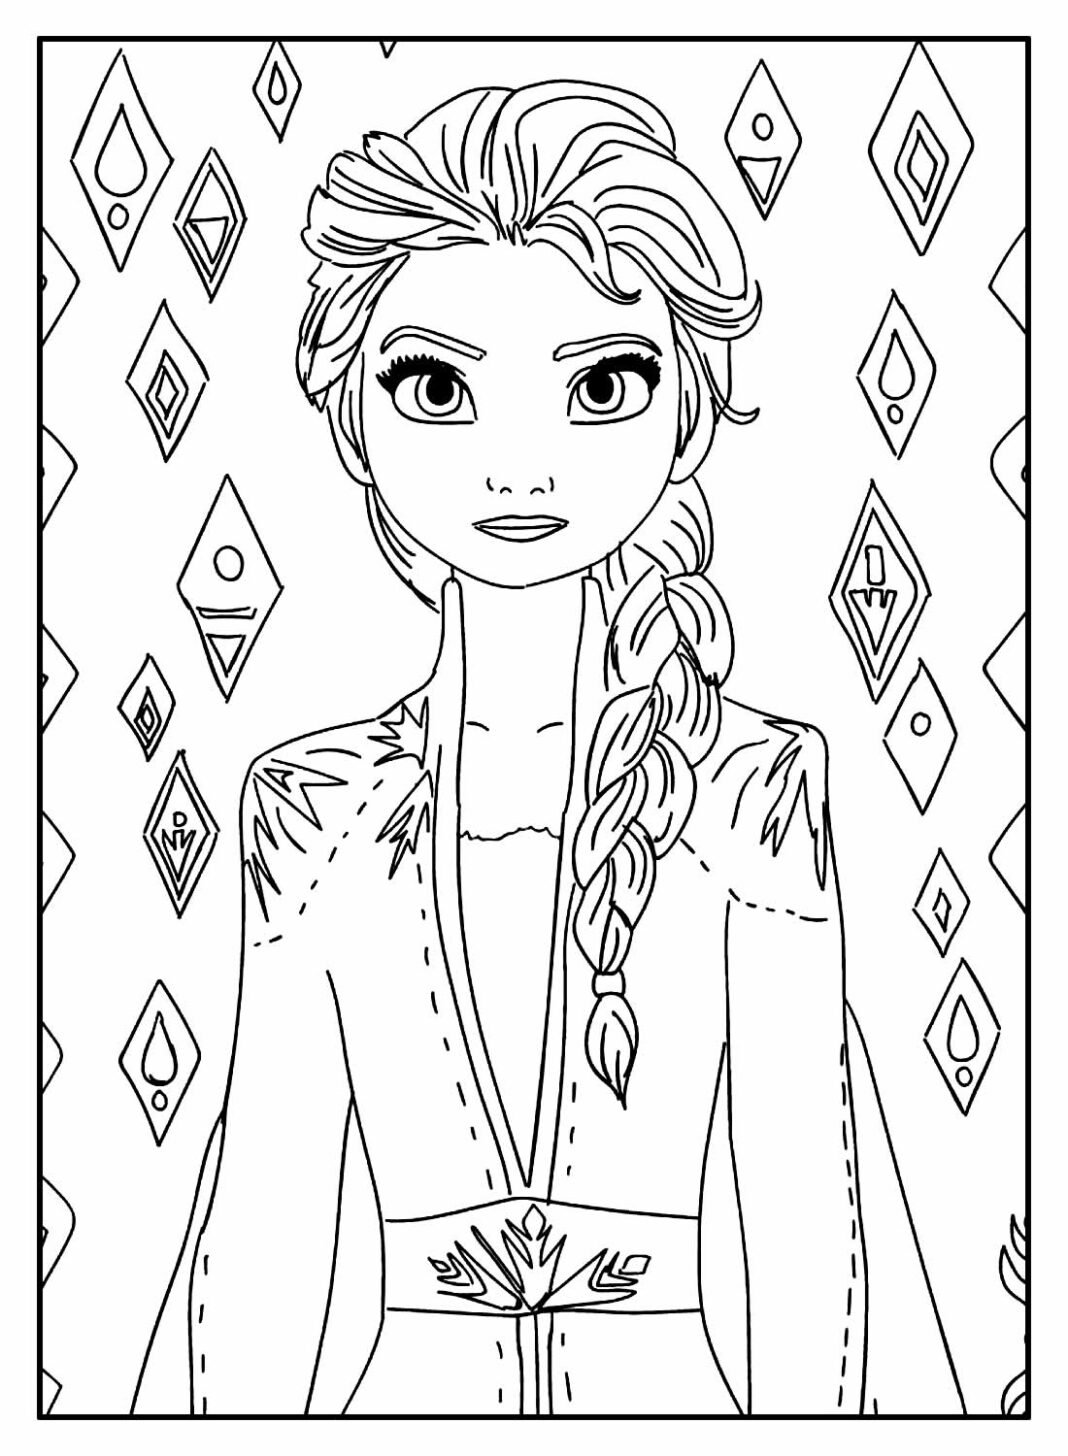 Desenhos Da Elsa Para Colorir E Imprimir